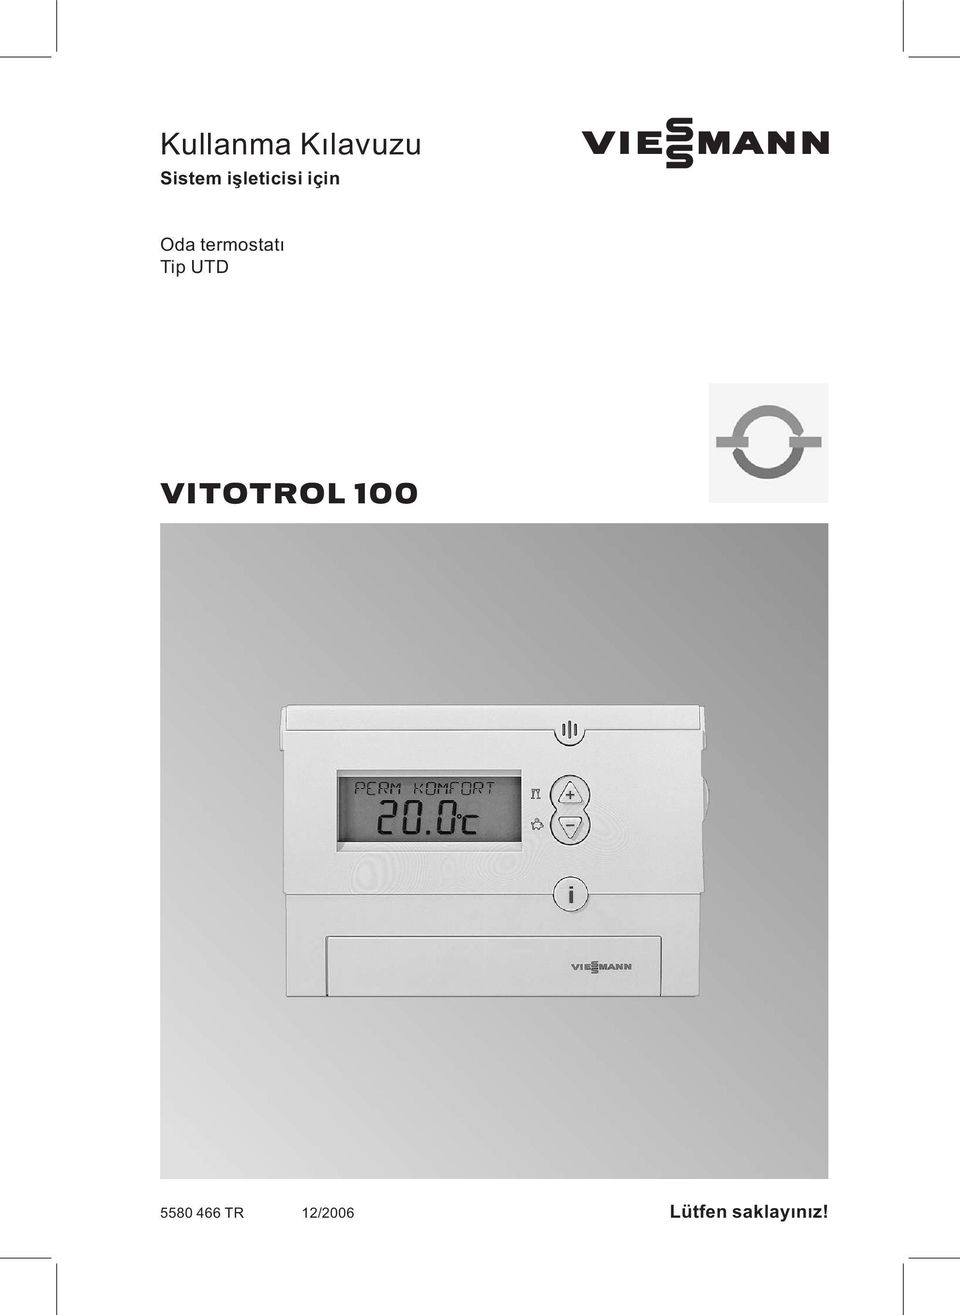 Oda termostatı Tip UTD